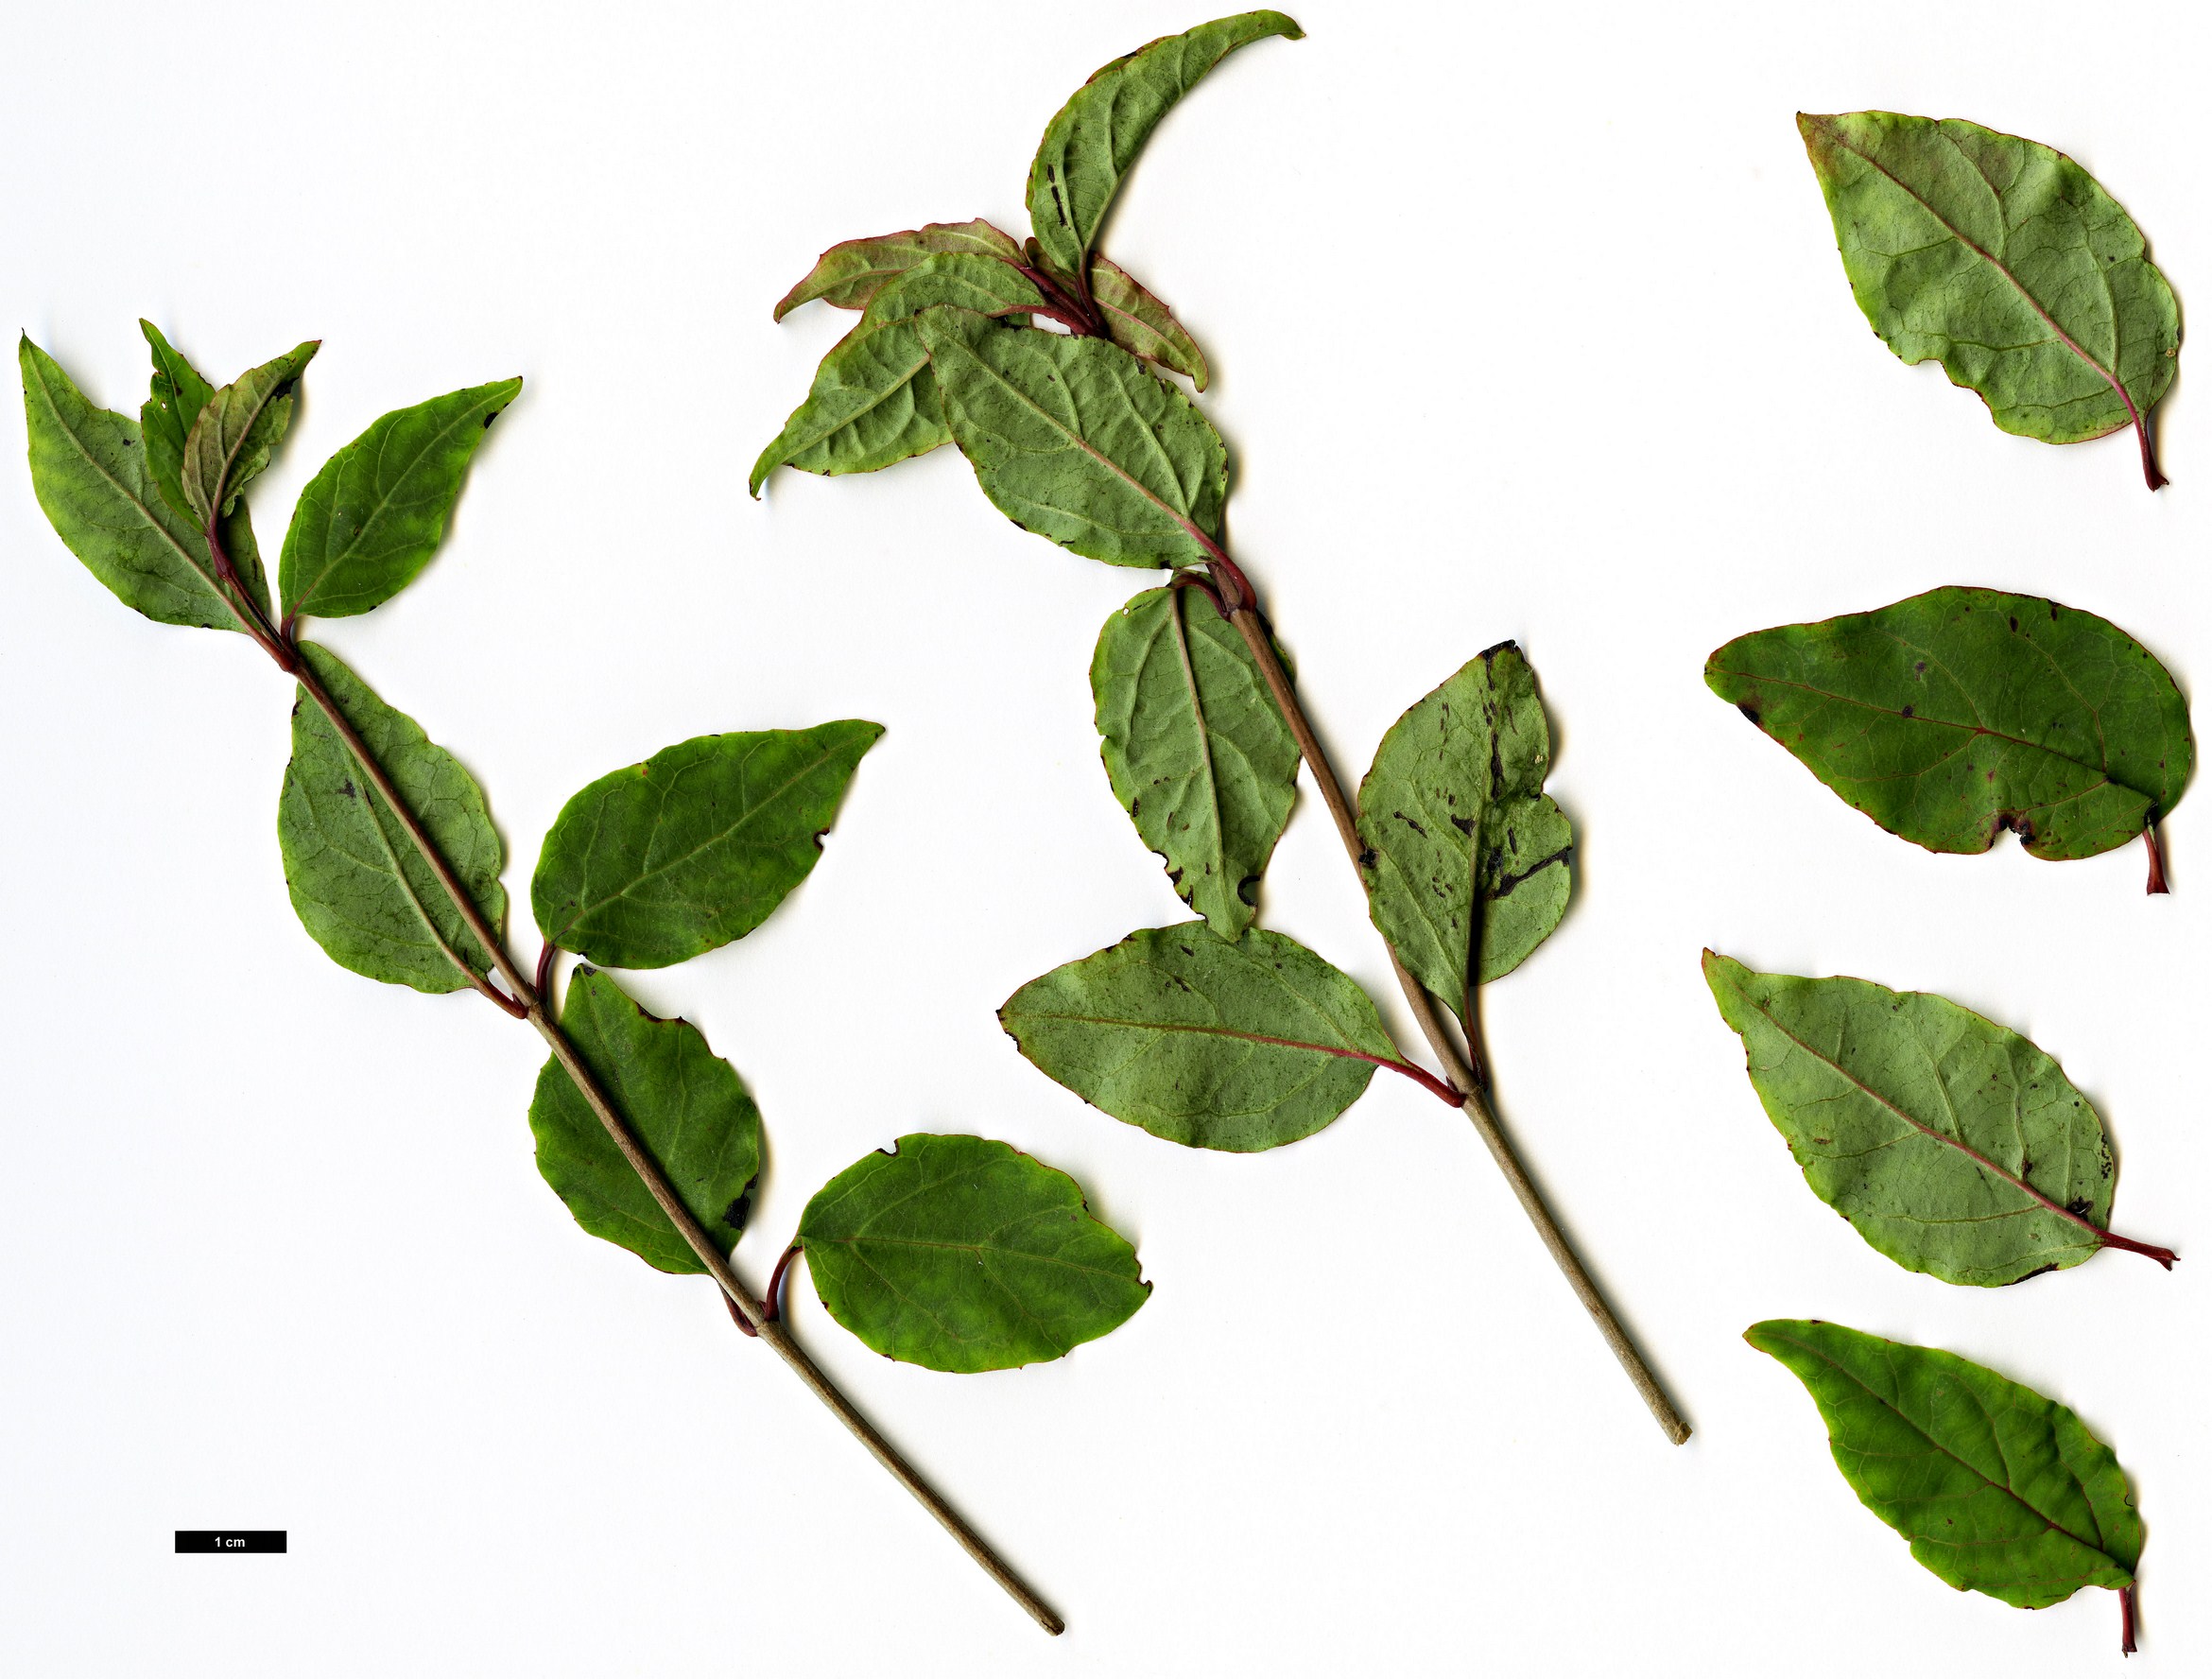 High resolution image: Family: Adoxaceae - Genus: Viburnum - Taxon: phlebotrichum